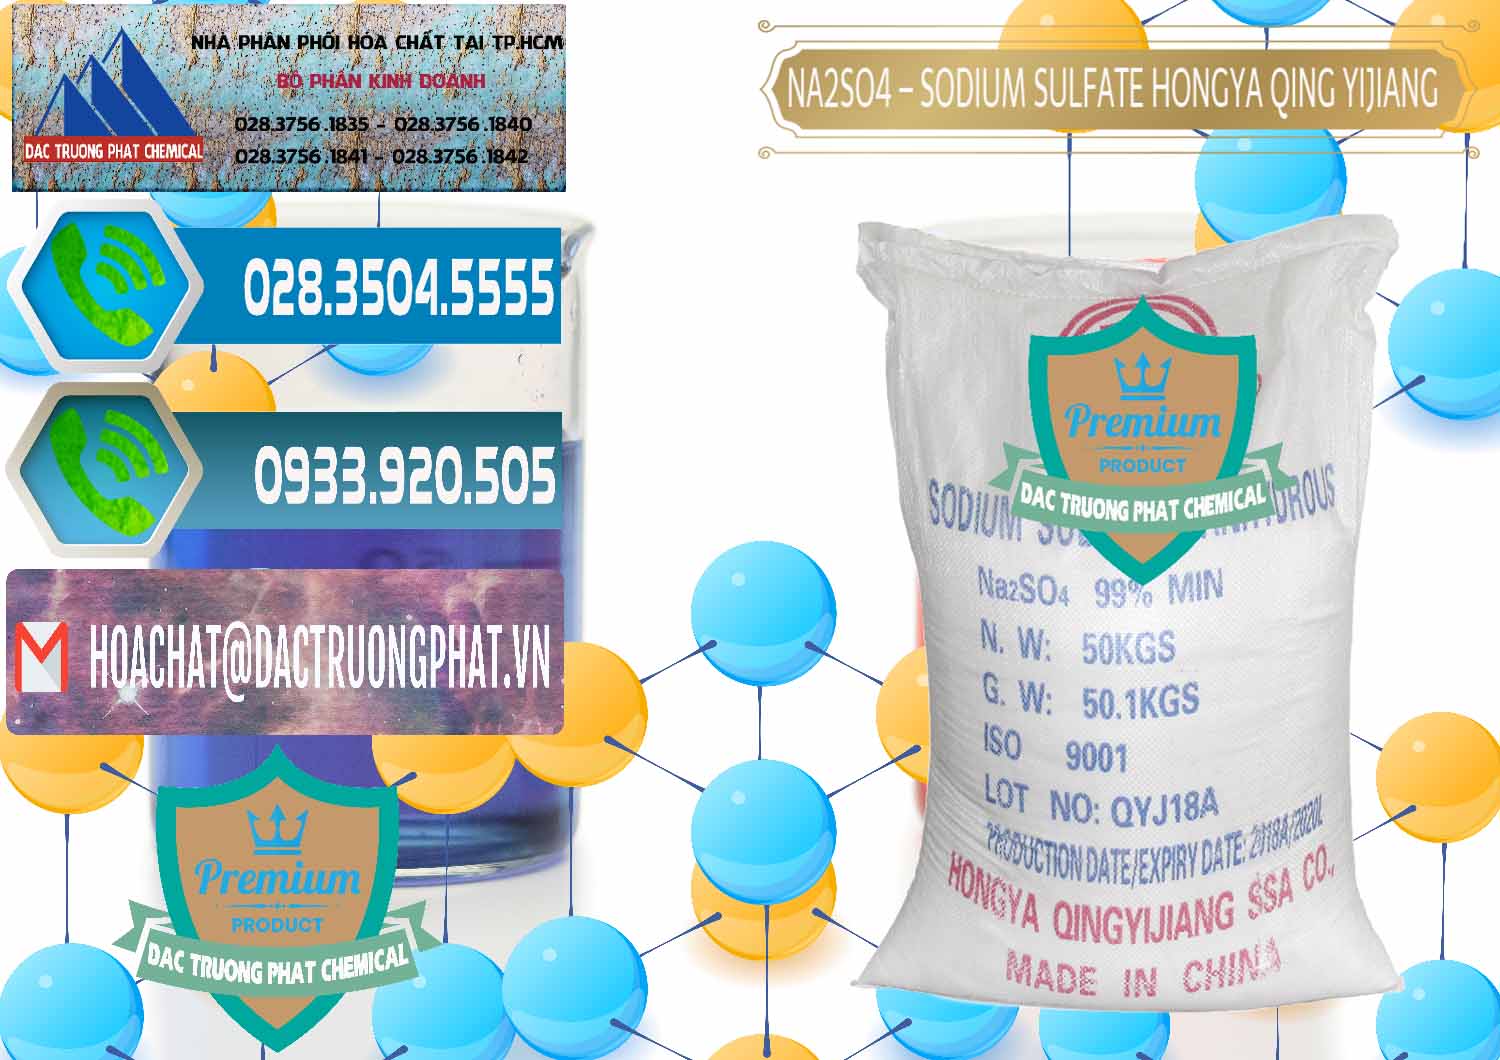 Chuyên cung cấp ( bán ) Sodium Sulphate - Muối Sunfat Na2SO4 Logo Cánh Bườm Hongya Qing Yi Trung Quốc China - 0098 - Kinh doanh và cung cấp hóa chất tại TP.HCM - congtyhoachat.net